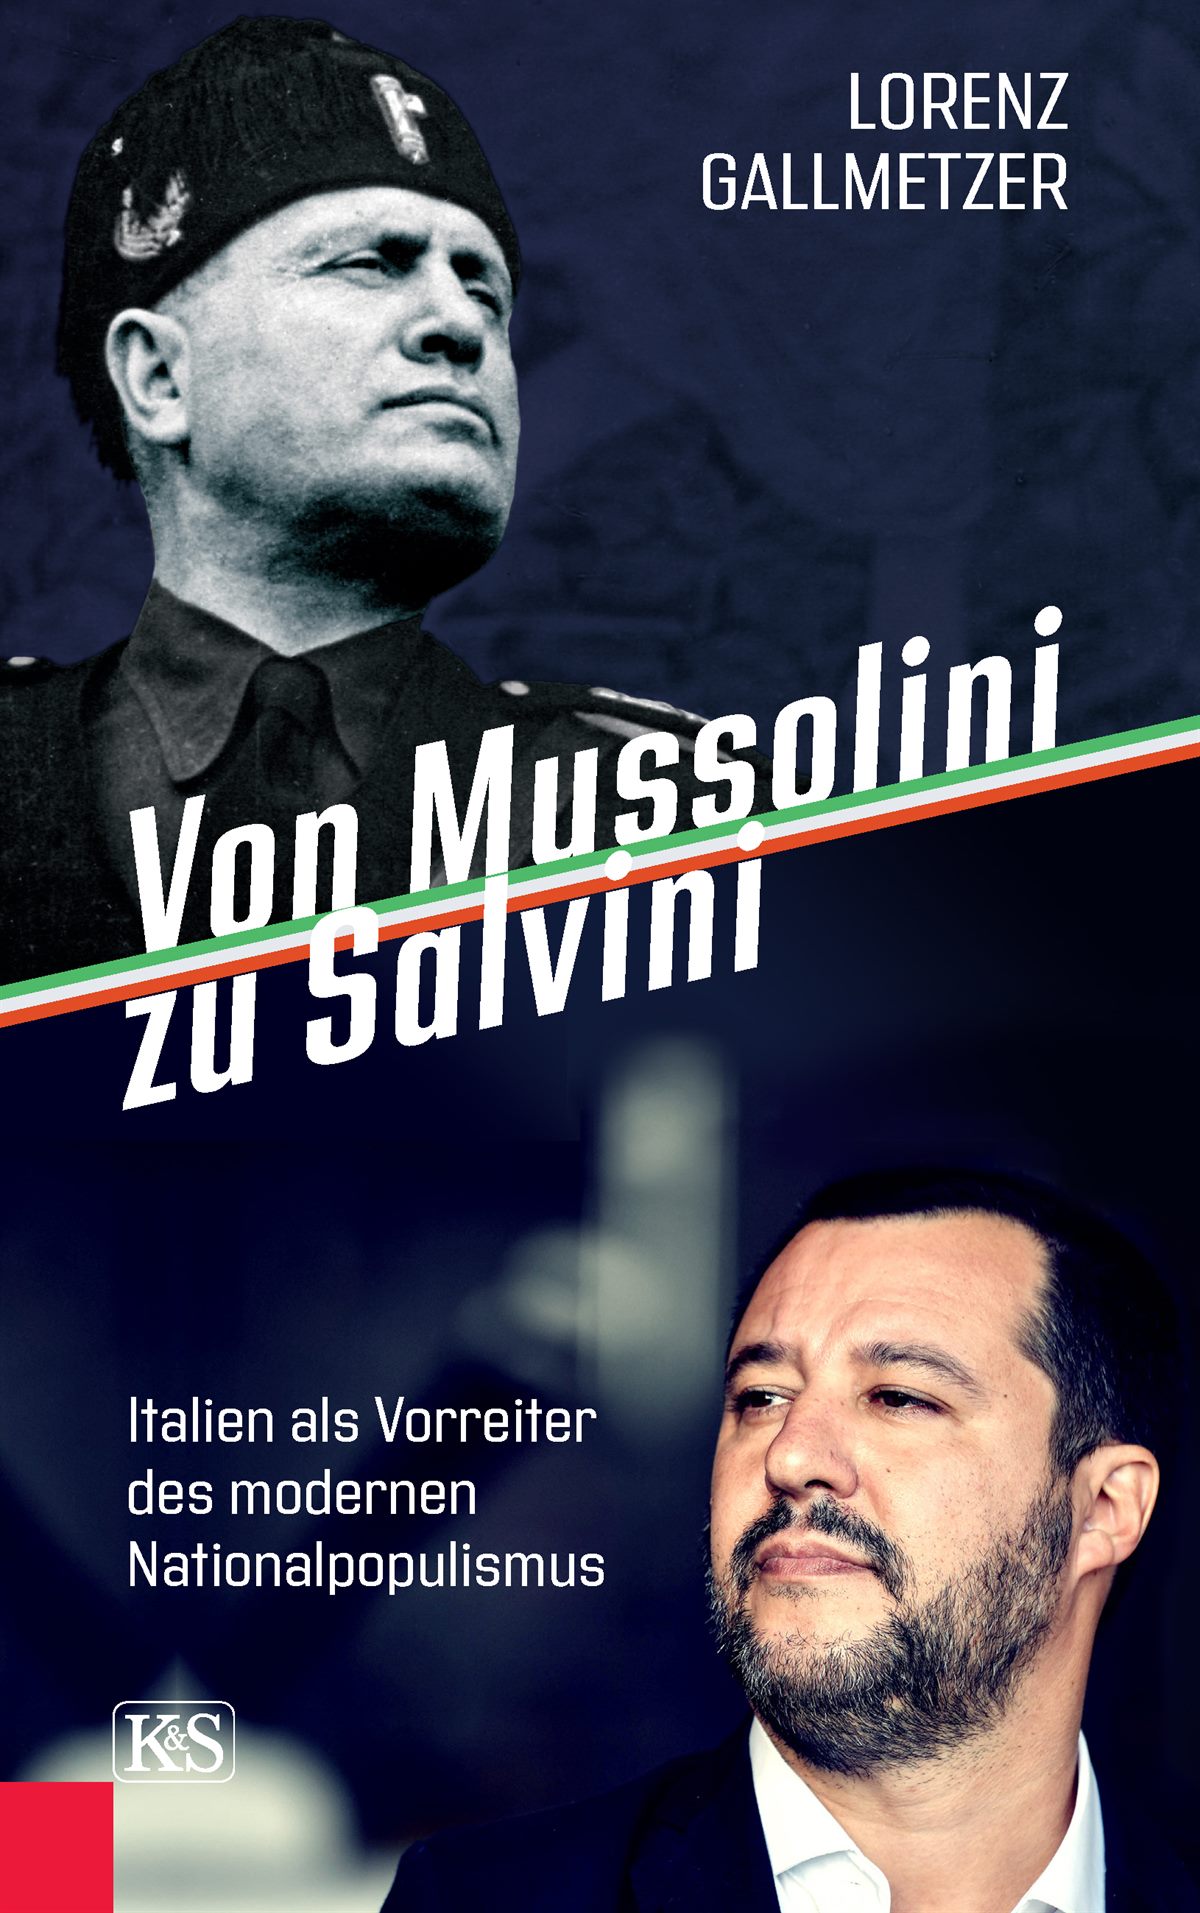 Lorenz Gallmetzer_Von Mussolini zu Salvini 